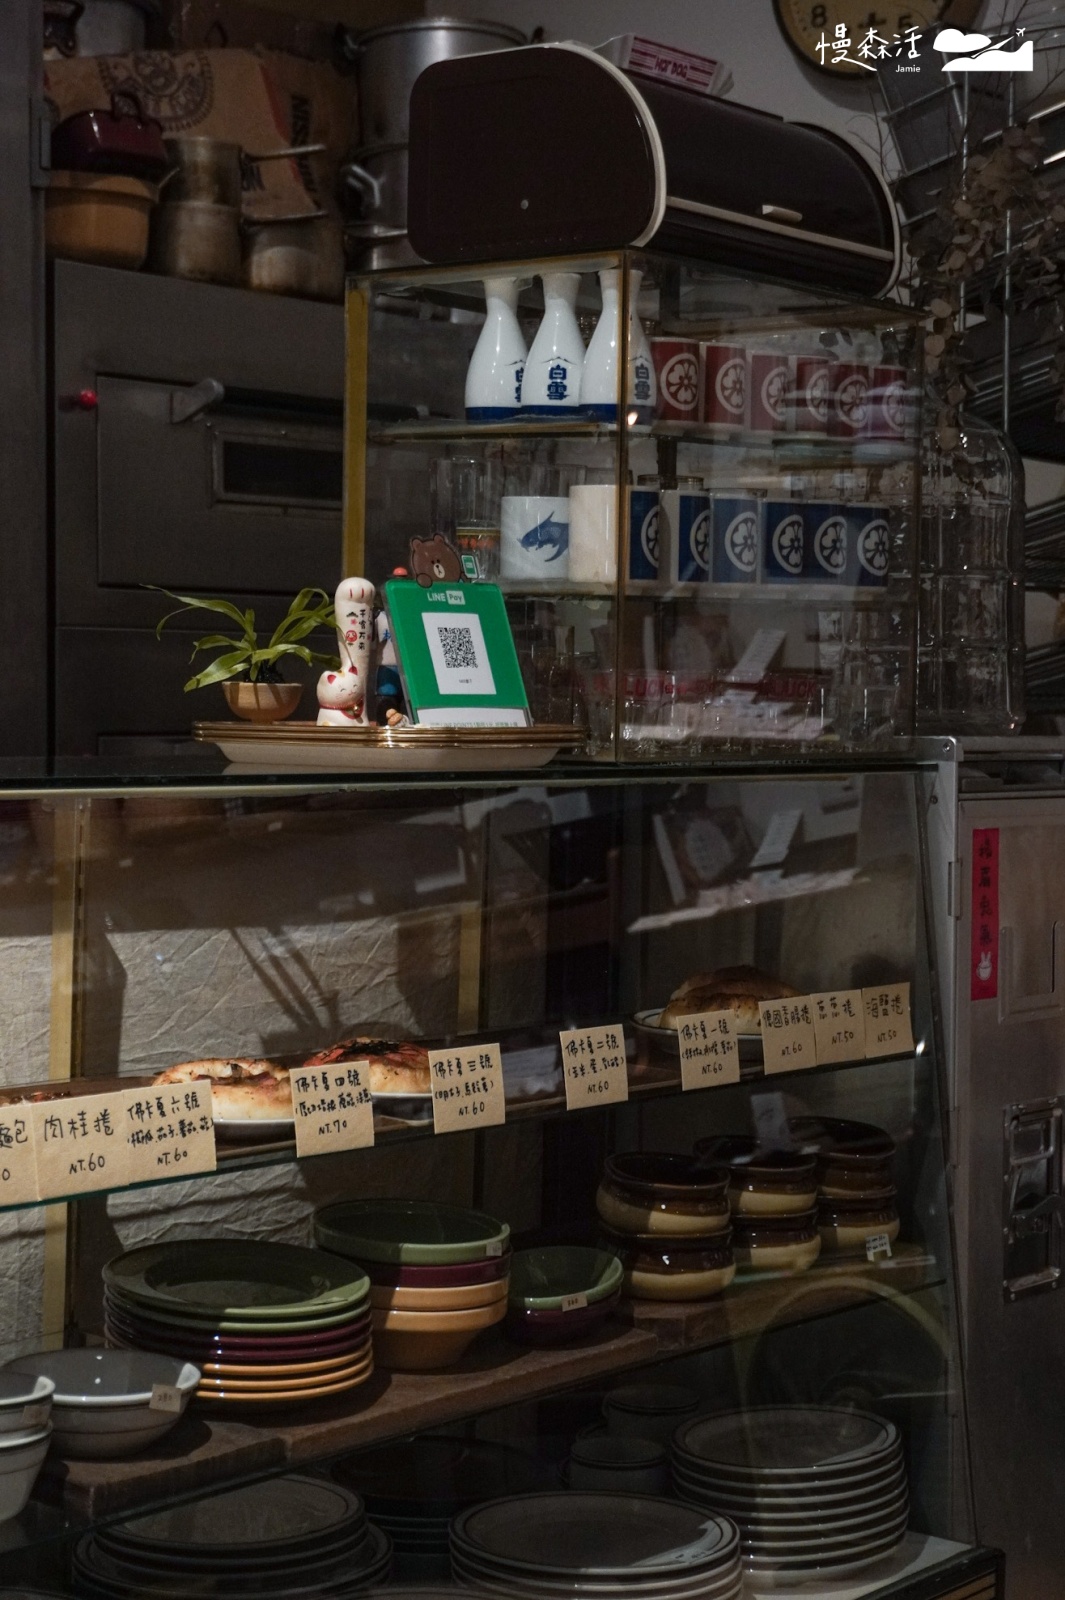 台北市士林區 外雙溪「磨子Mill」咖啡店 店內選物碗盤